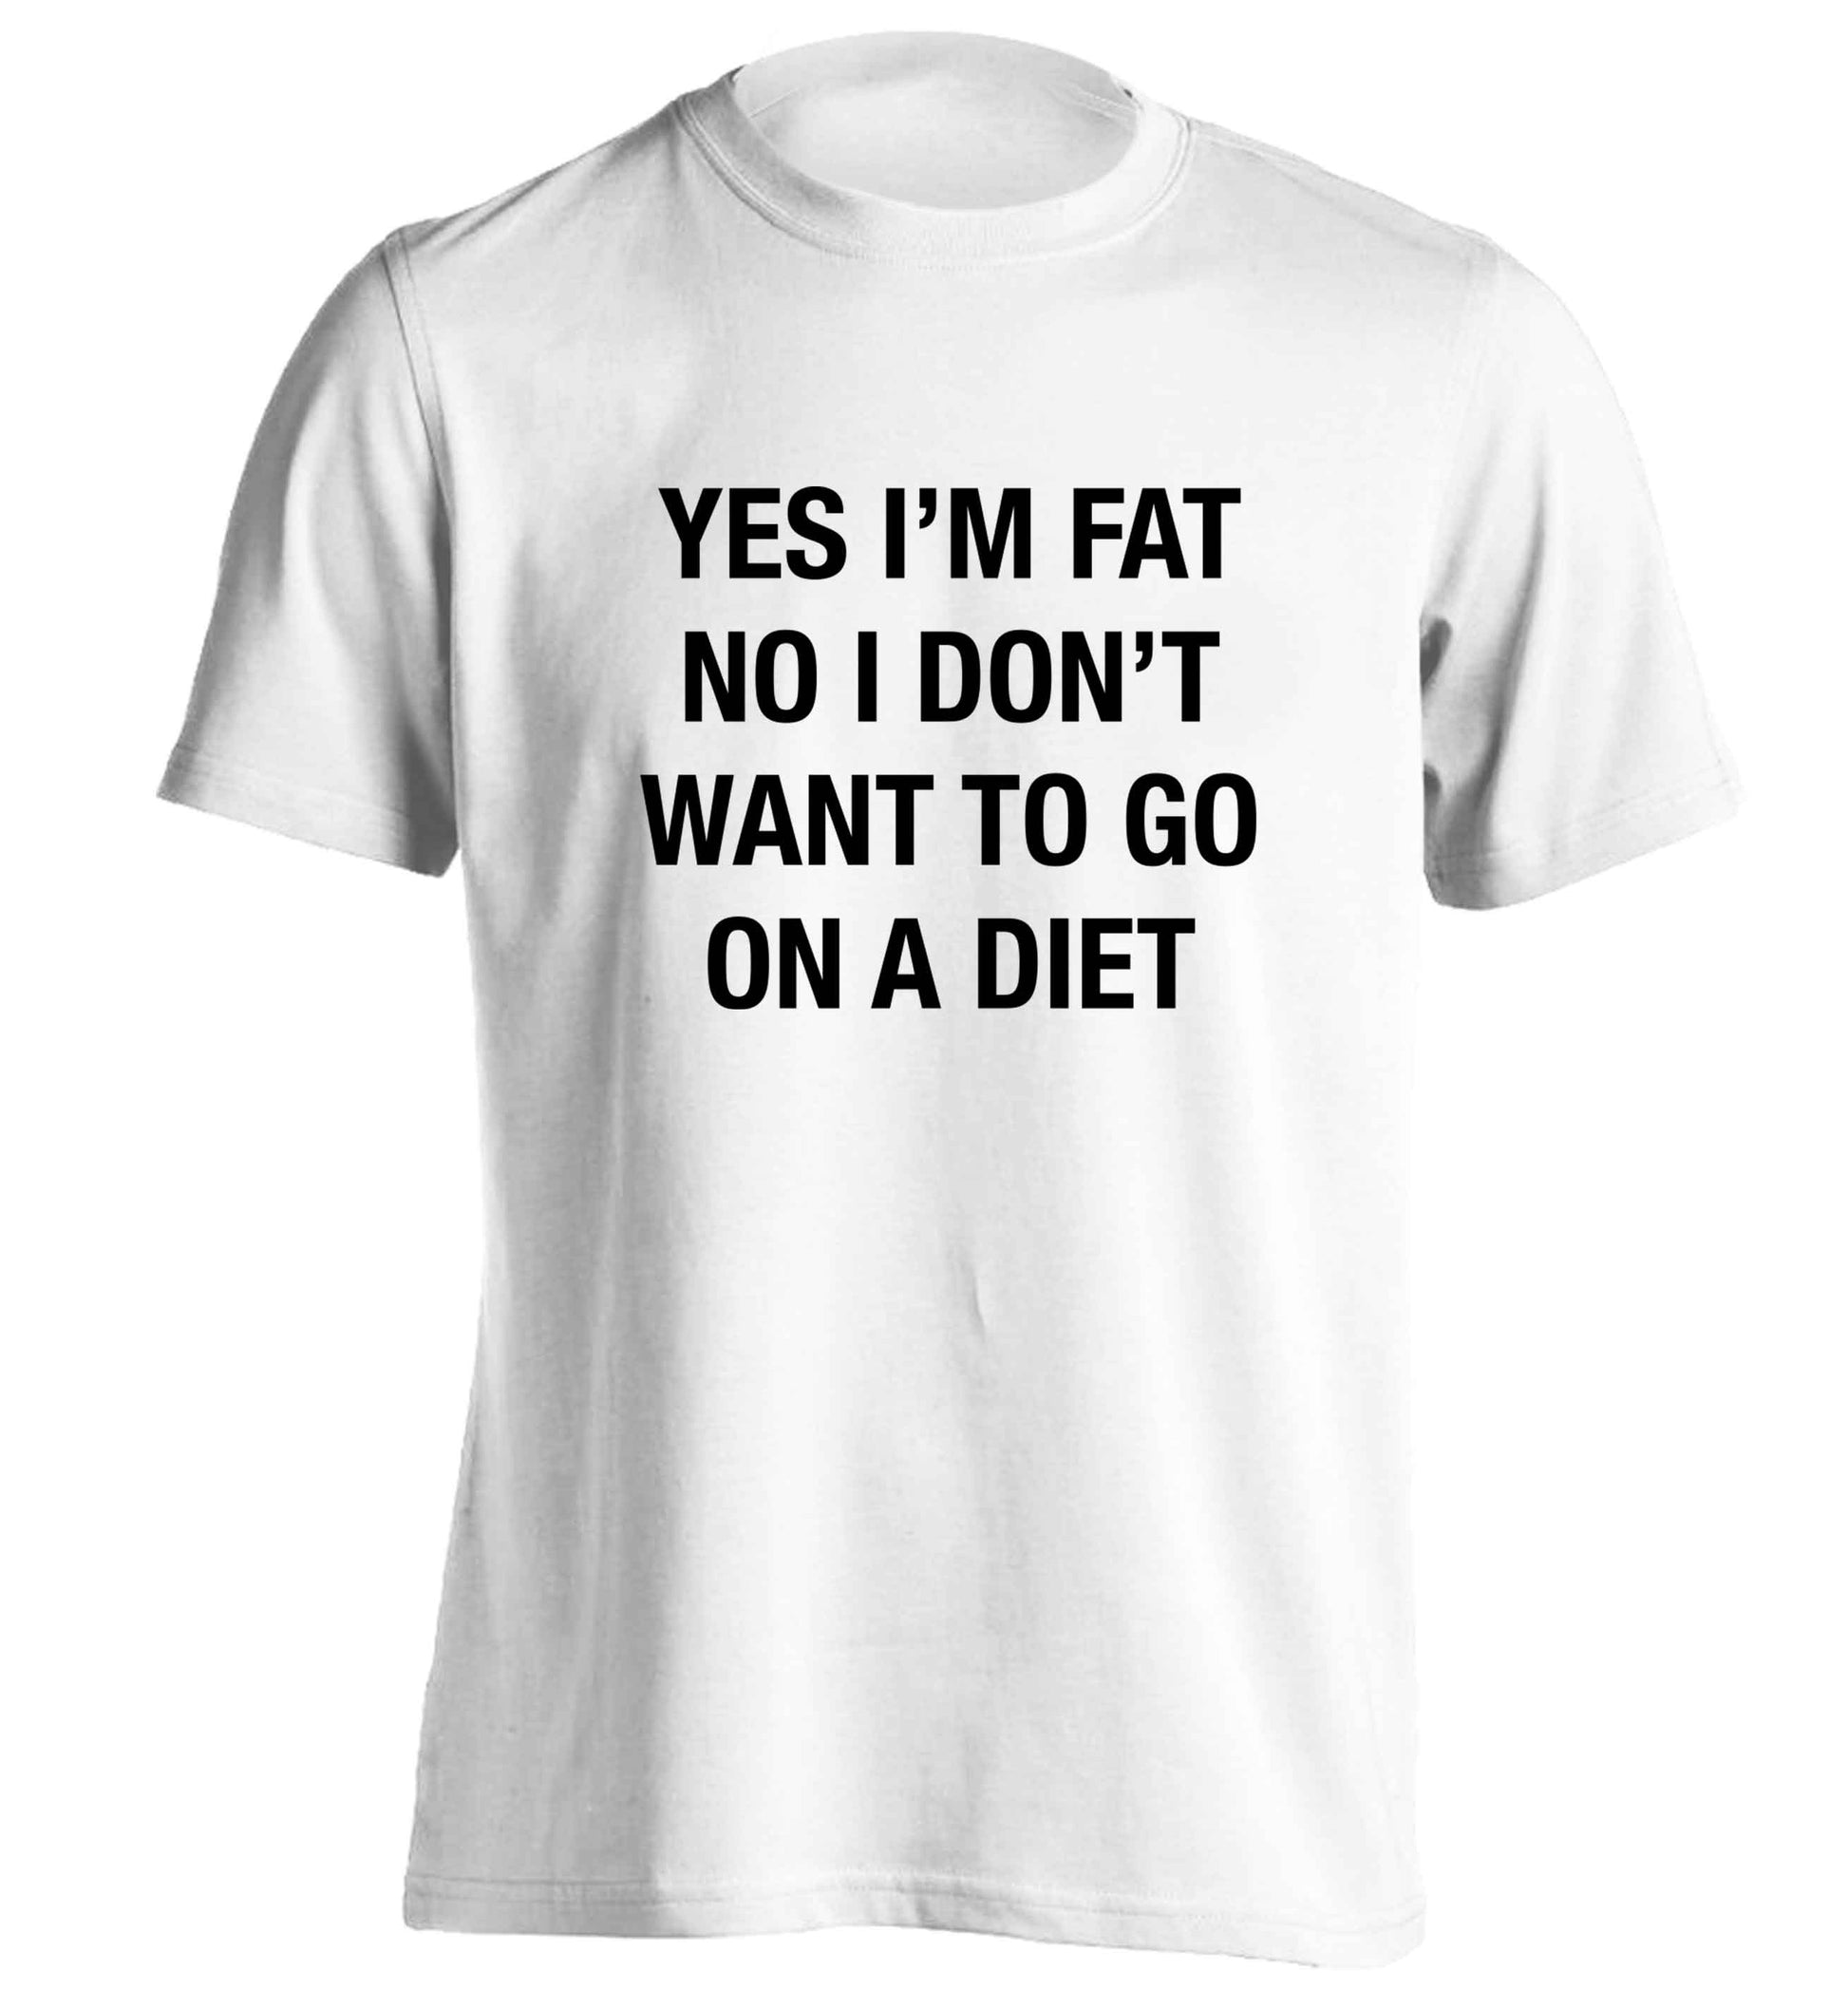 Yes I'm fat, no I don't want to go on a diet adults unisex white Tshirt 2XL